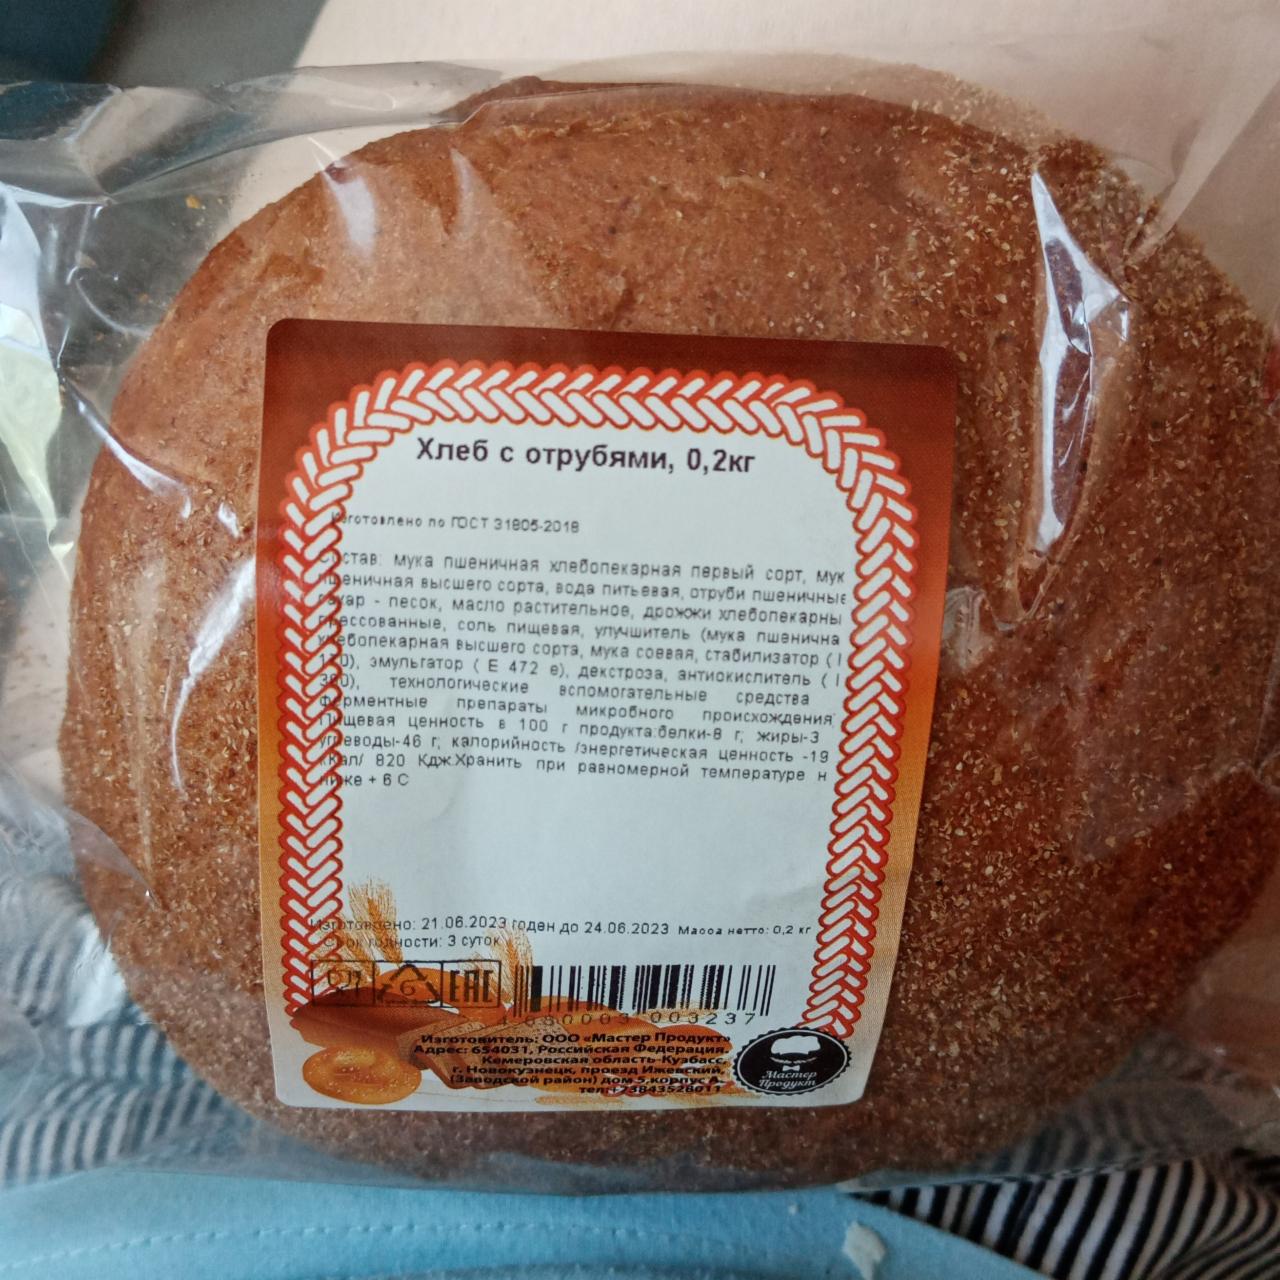 Фото - Хлеб с отрубями Мастер продукт